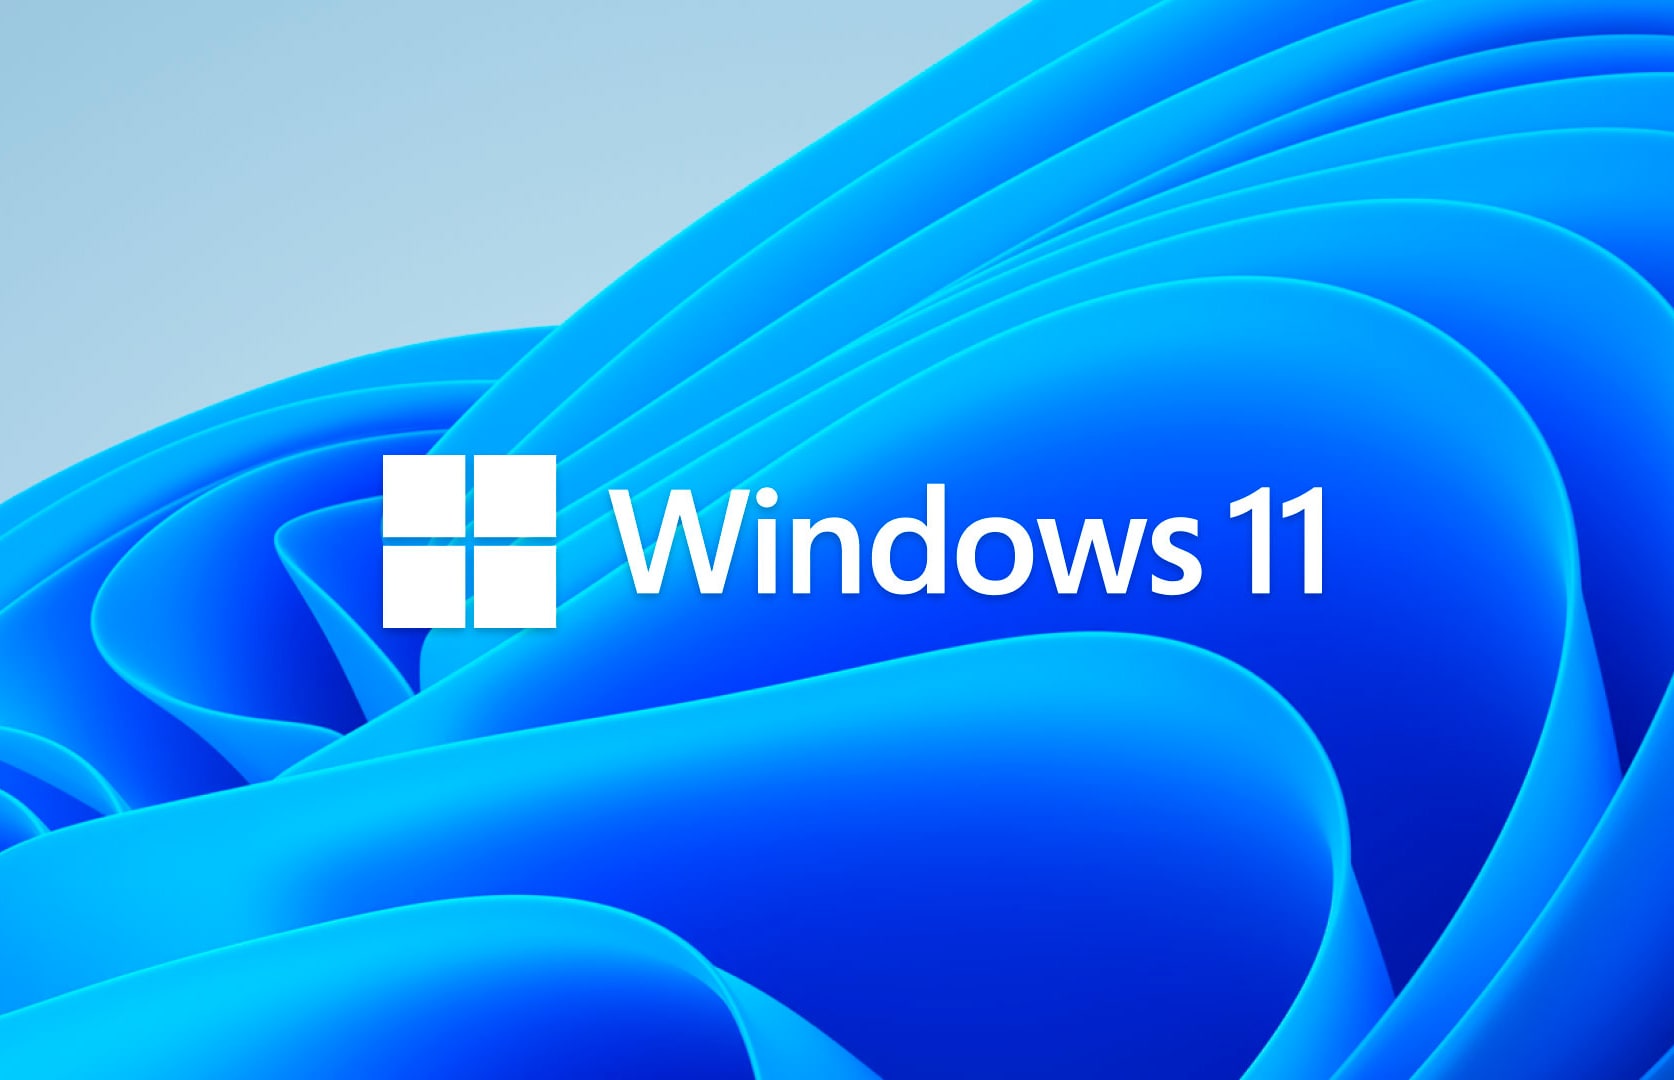 Панель задач Windows 11 обретет новую функциональность